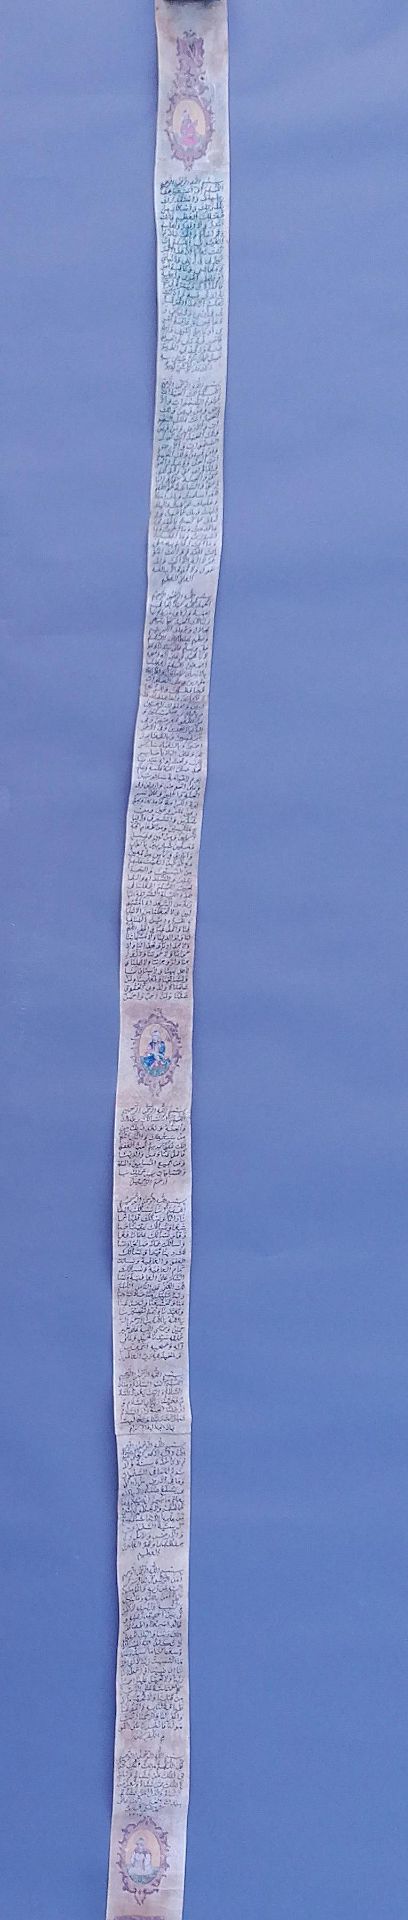 Suren-Pergamentrolle, osmanisches Reich, datiert 1217 (= 1802)